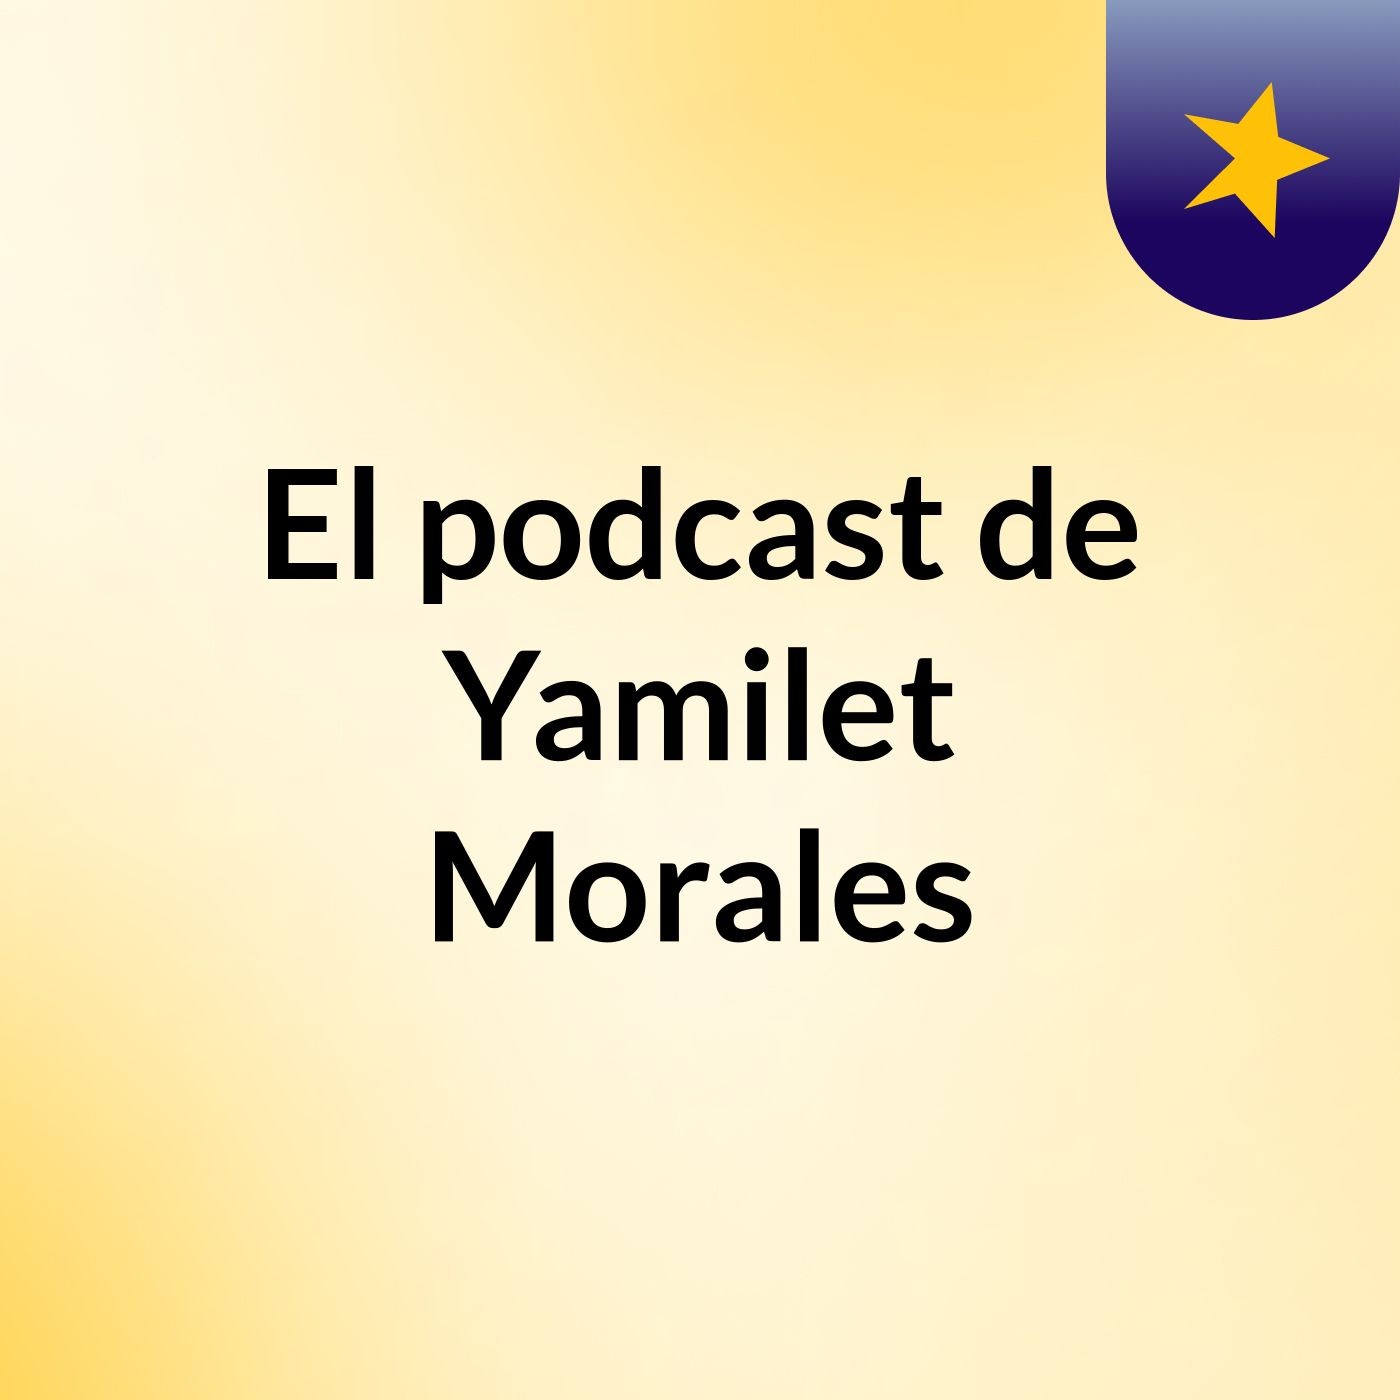 El podcast de Yamilet Morales